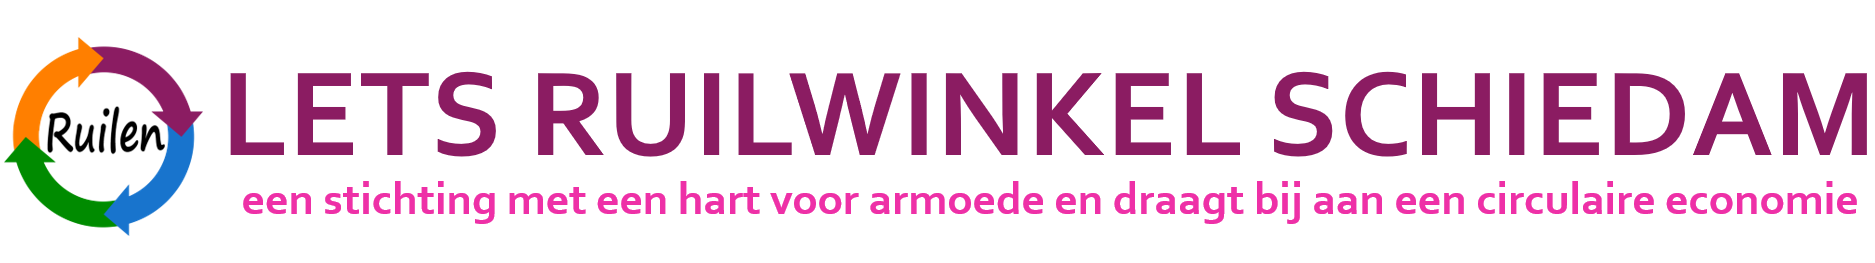 Ruilwinkel.lets-schiedam.nl